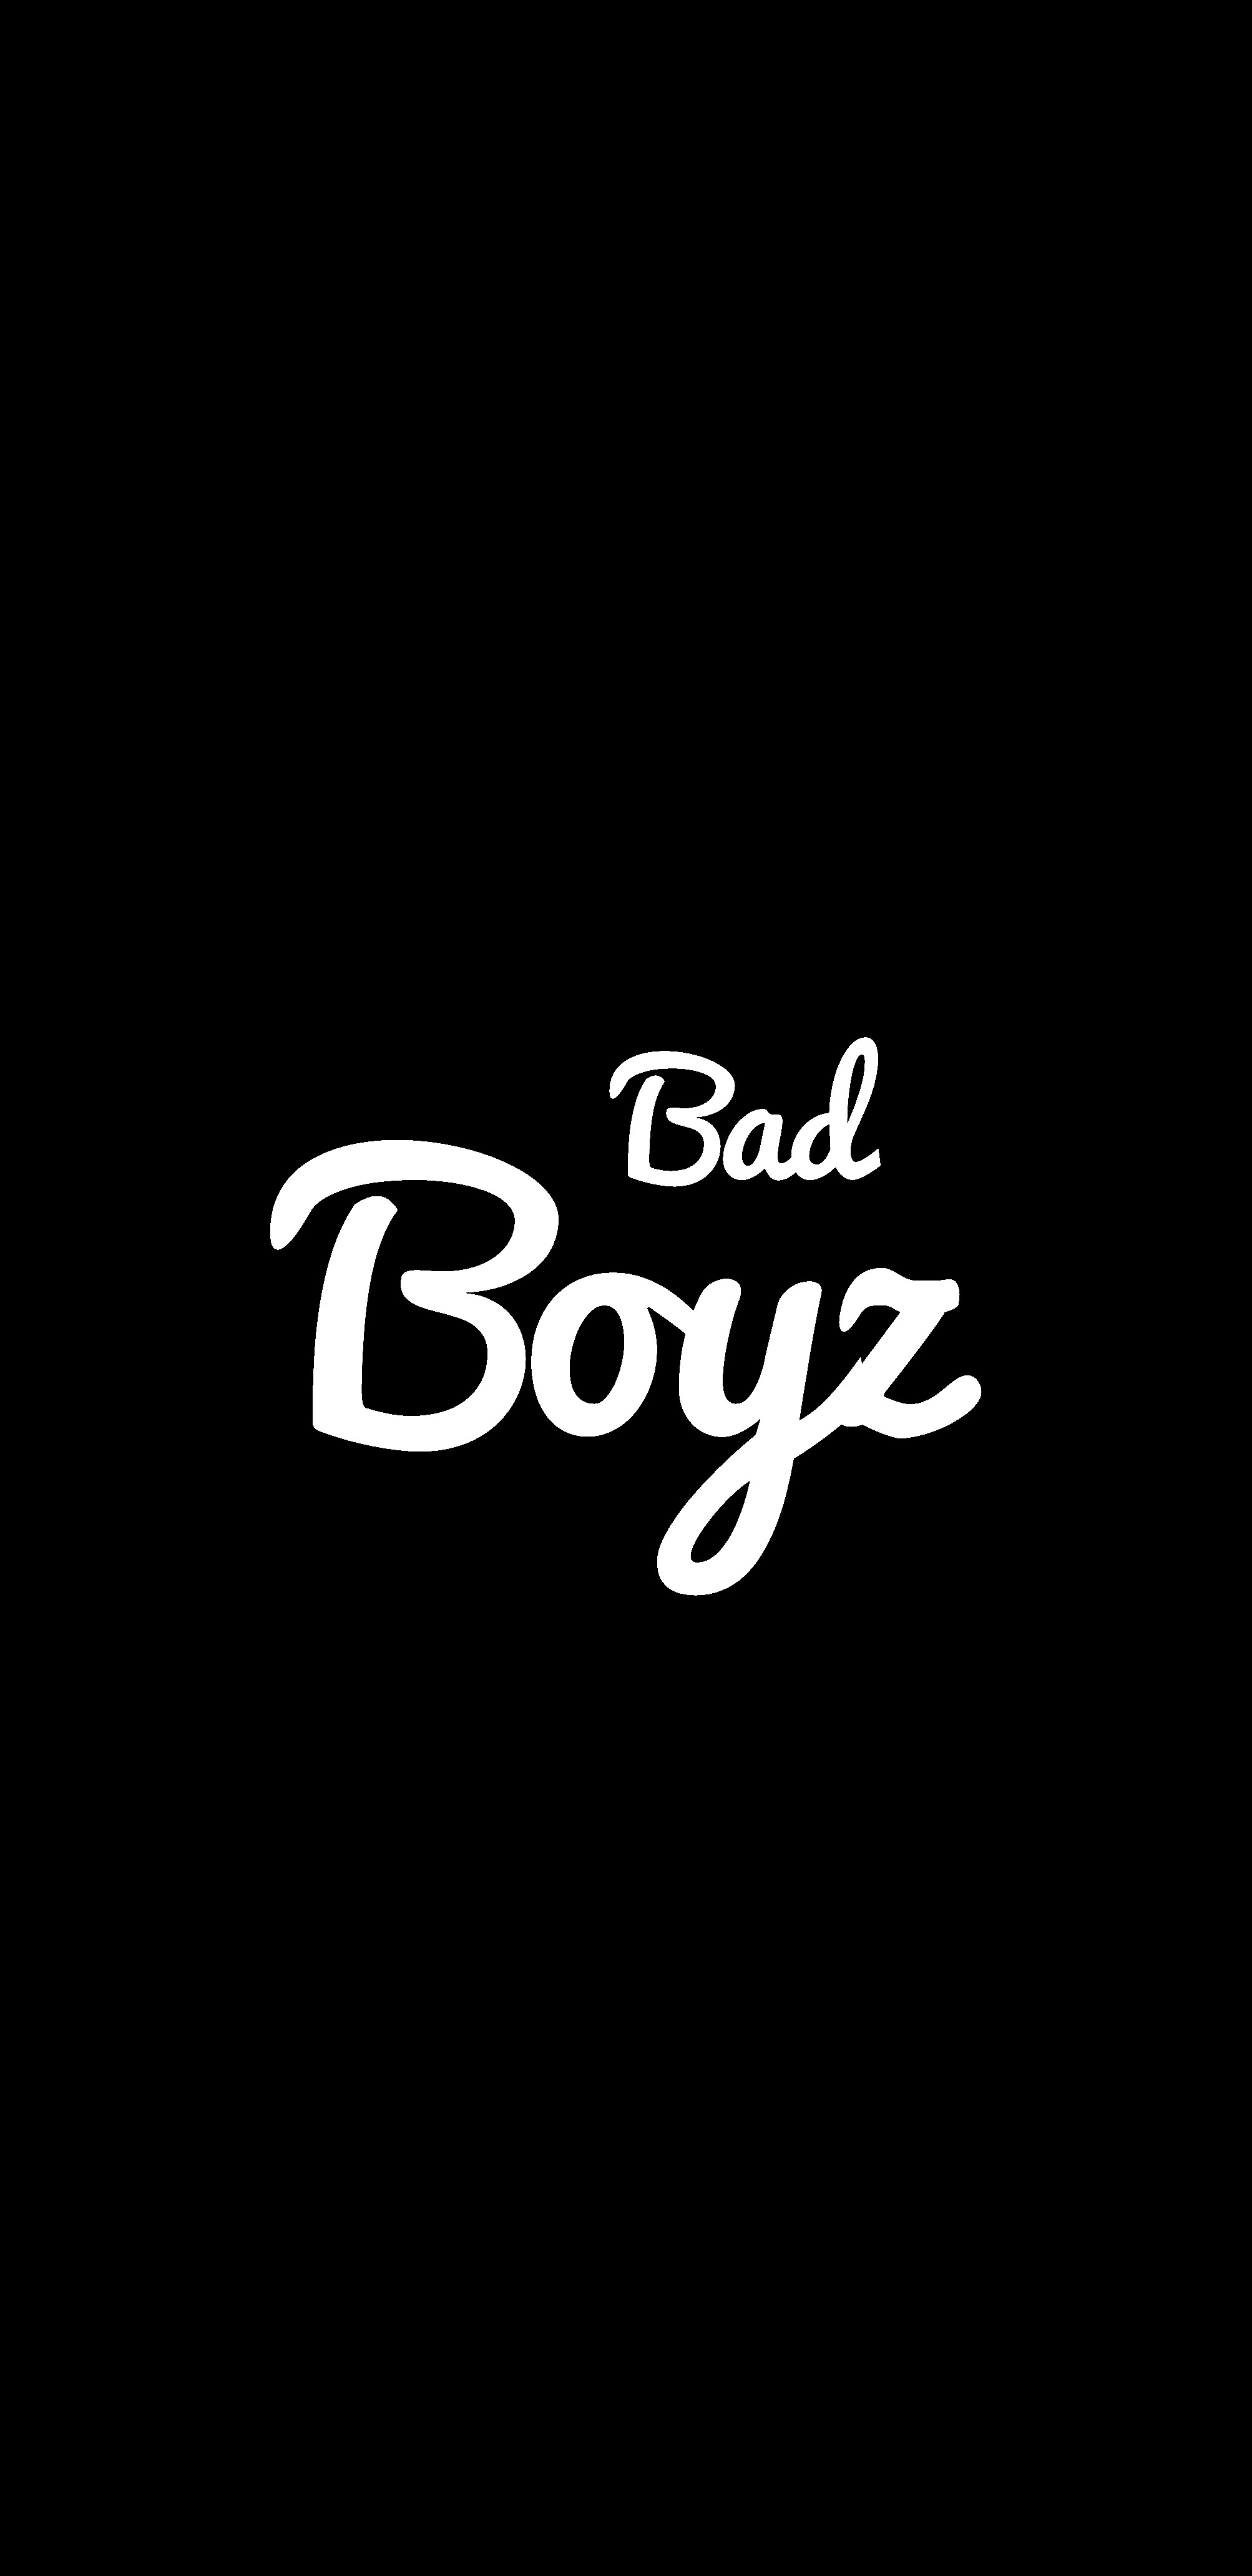 I Am Bad Boy - Black Background